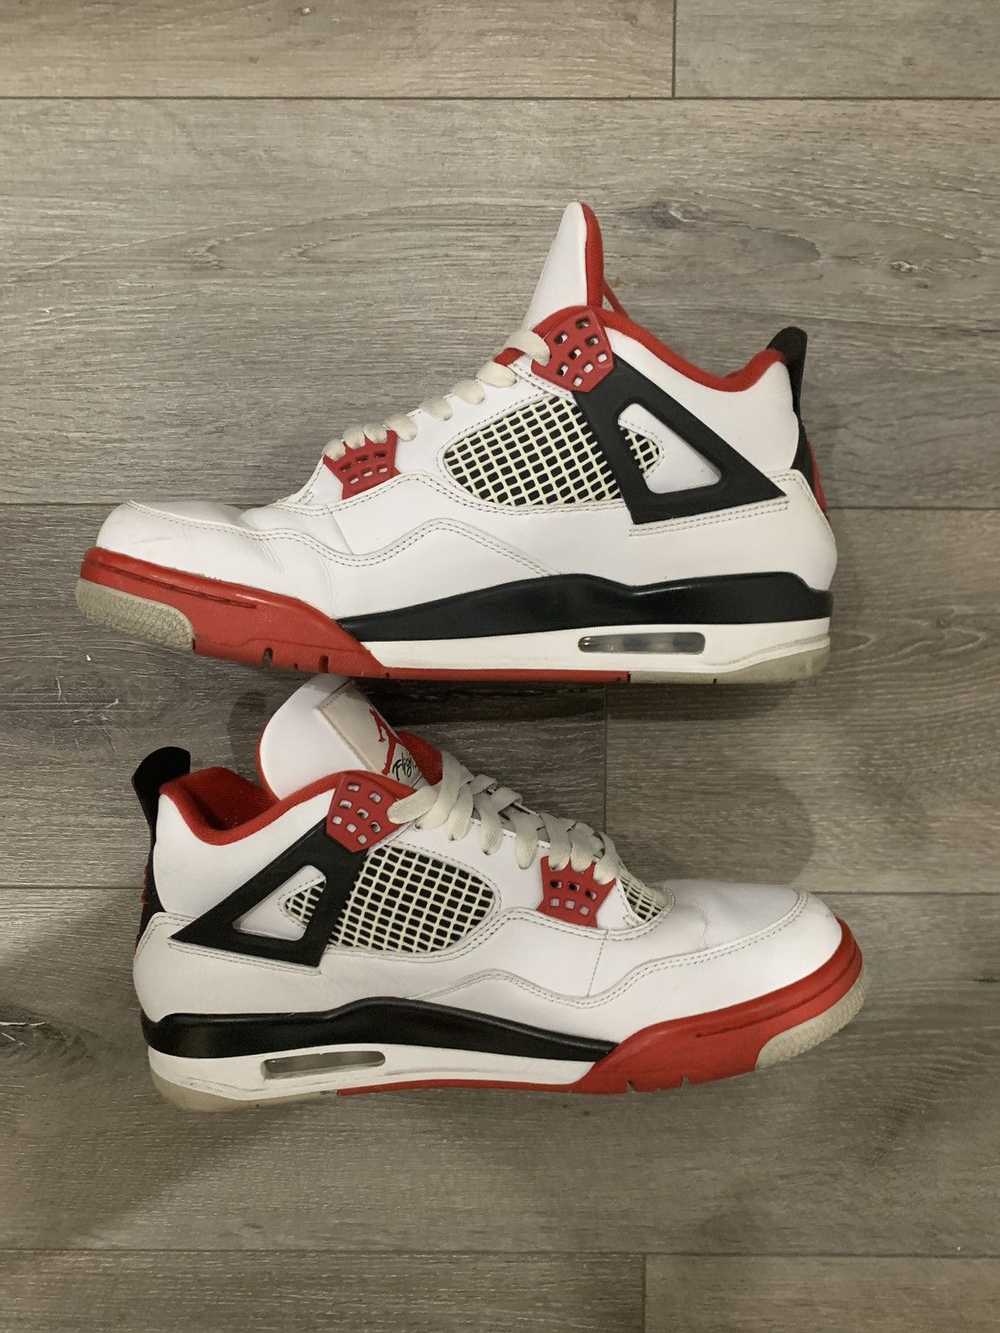 Jordan Brand × Nike Air Jordan 4 Fire Red 10.5 - image 2